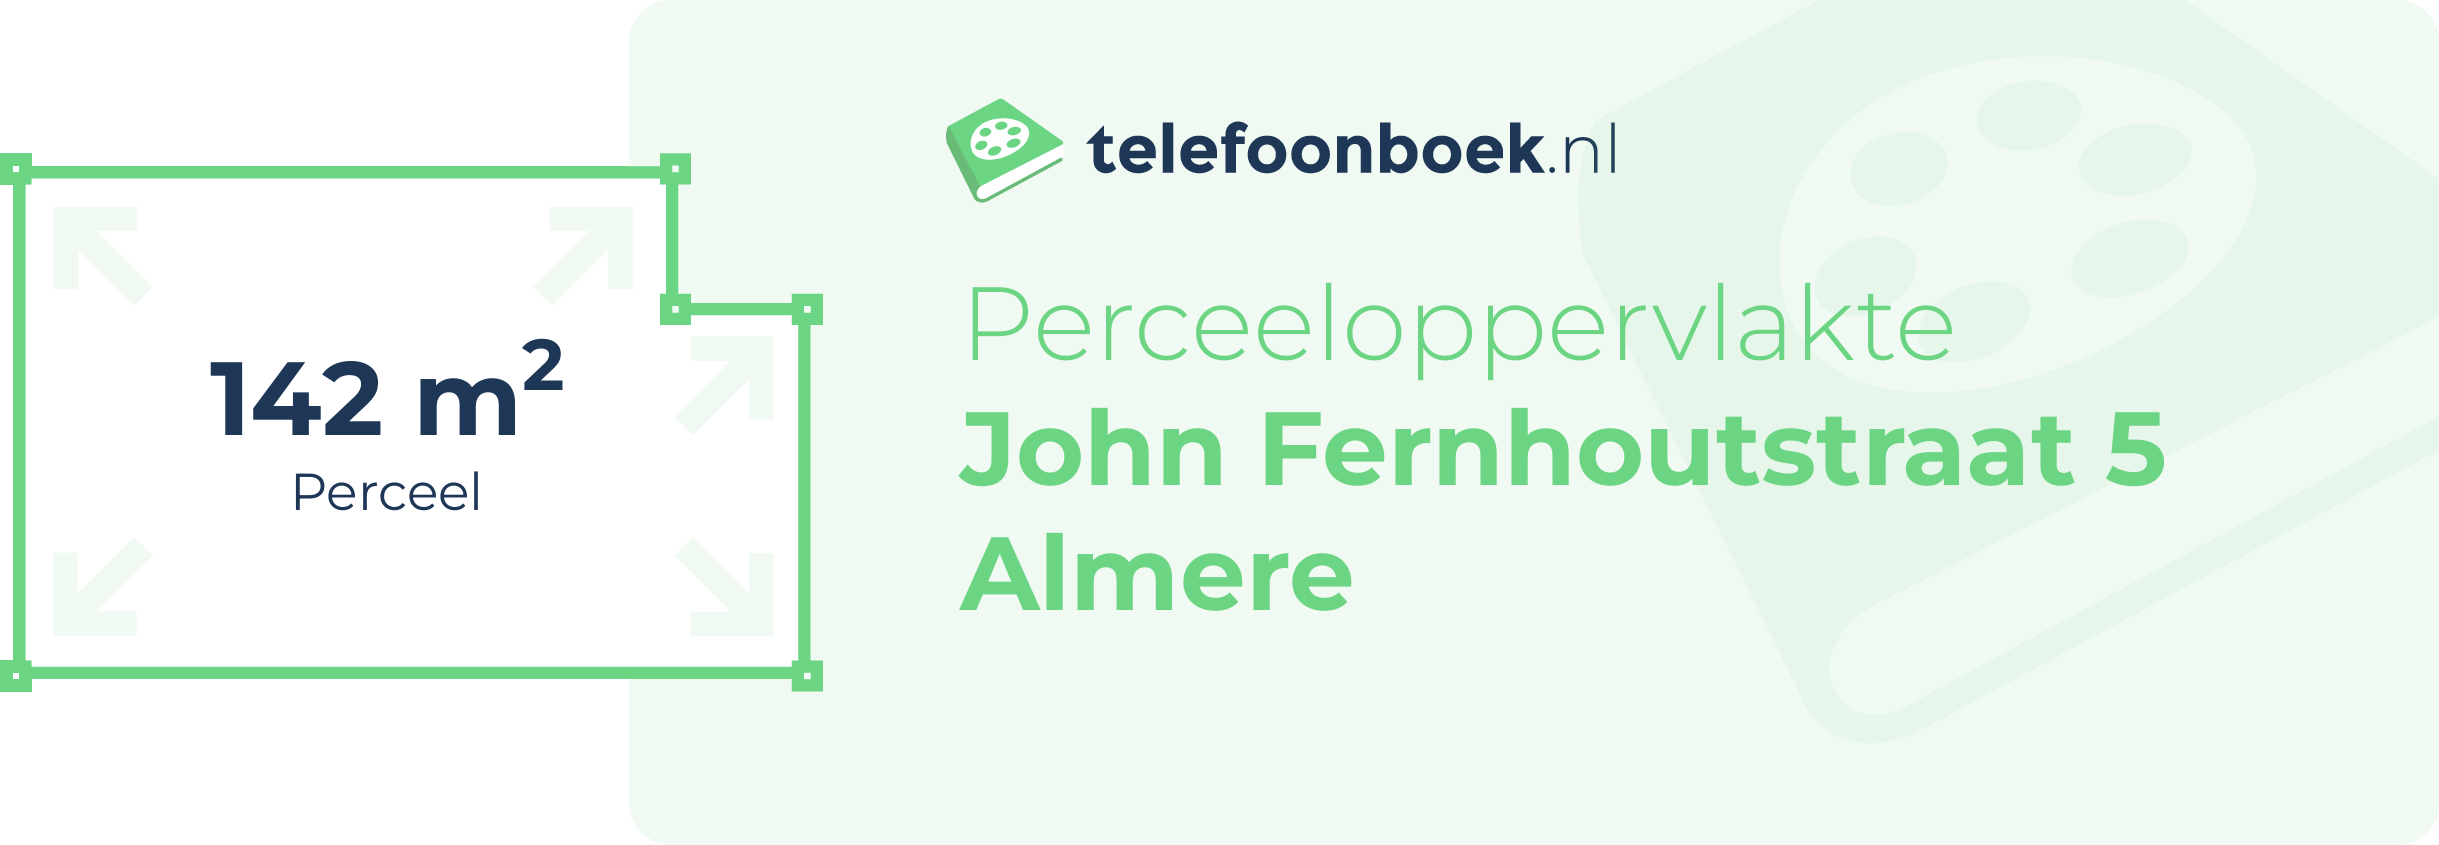 Perceeloppervlakte John Fernhoutstraat 5 Almere